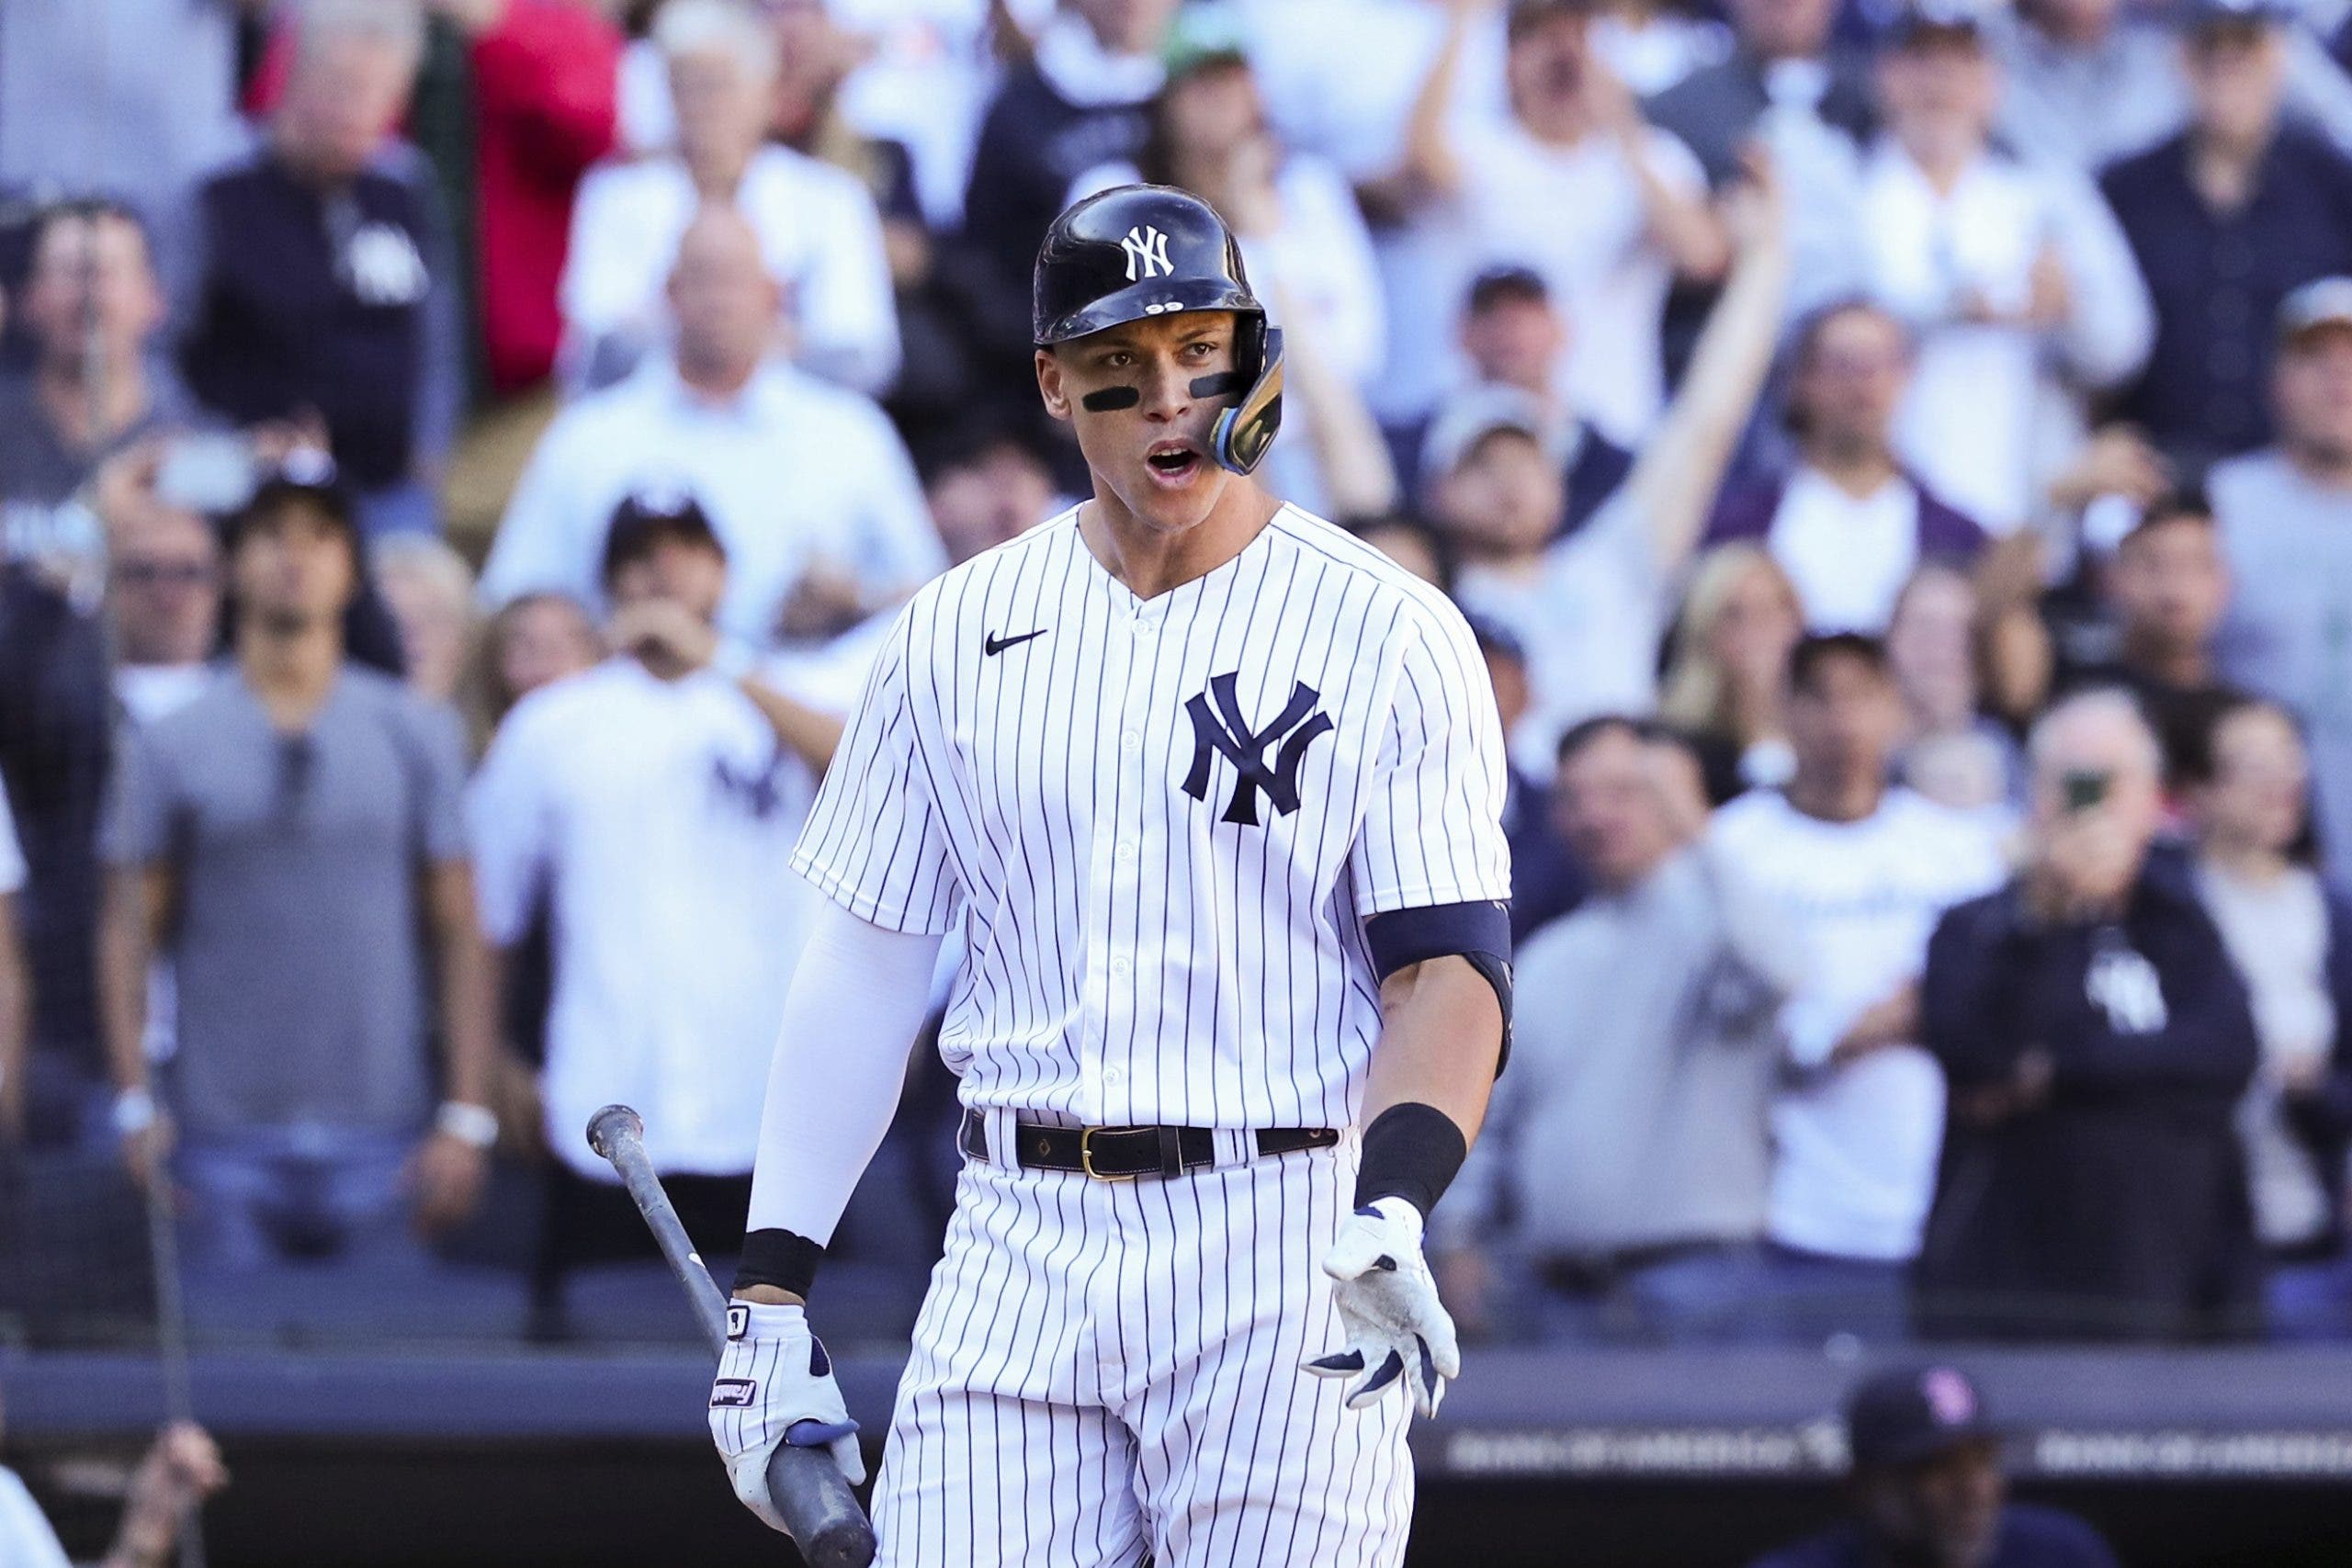 Yankees no se dan por vencidos y mantienen fe en retener a Judge